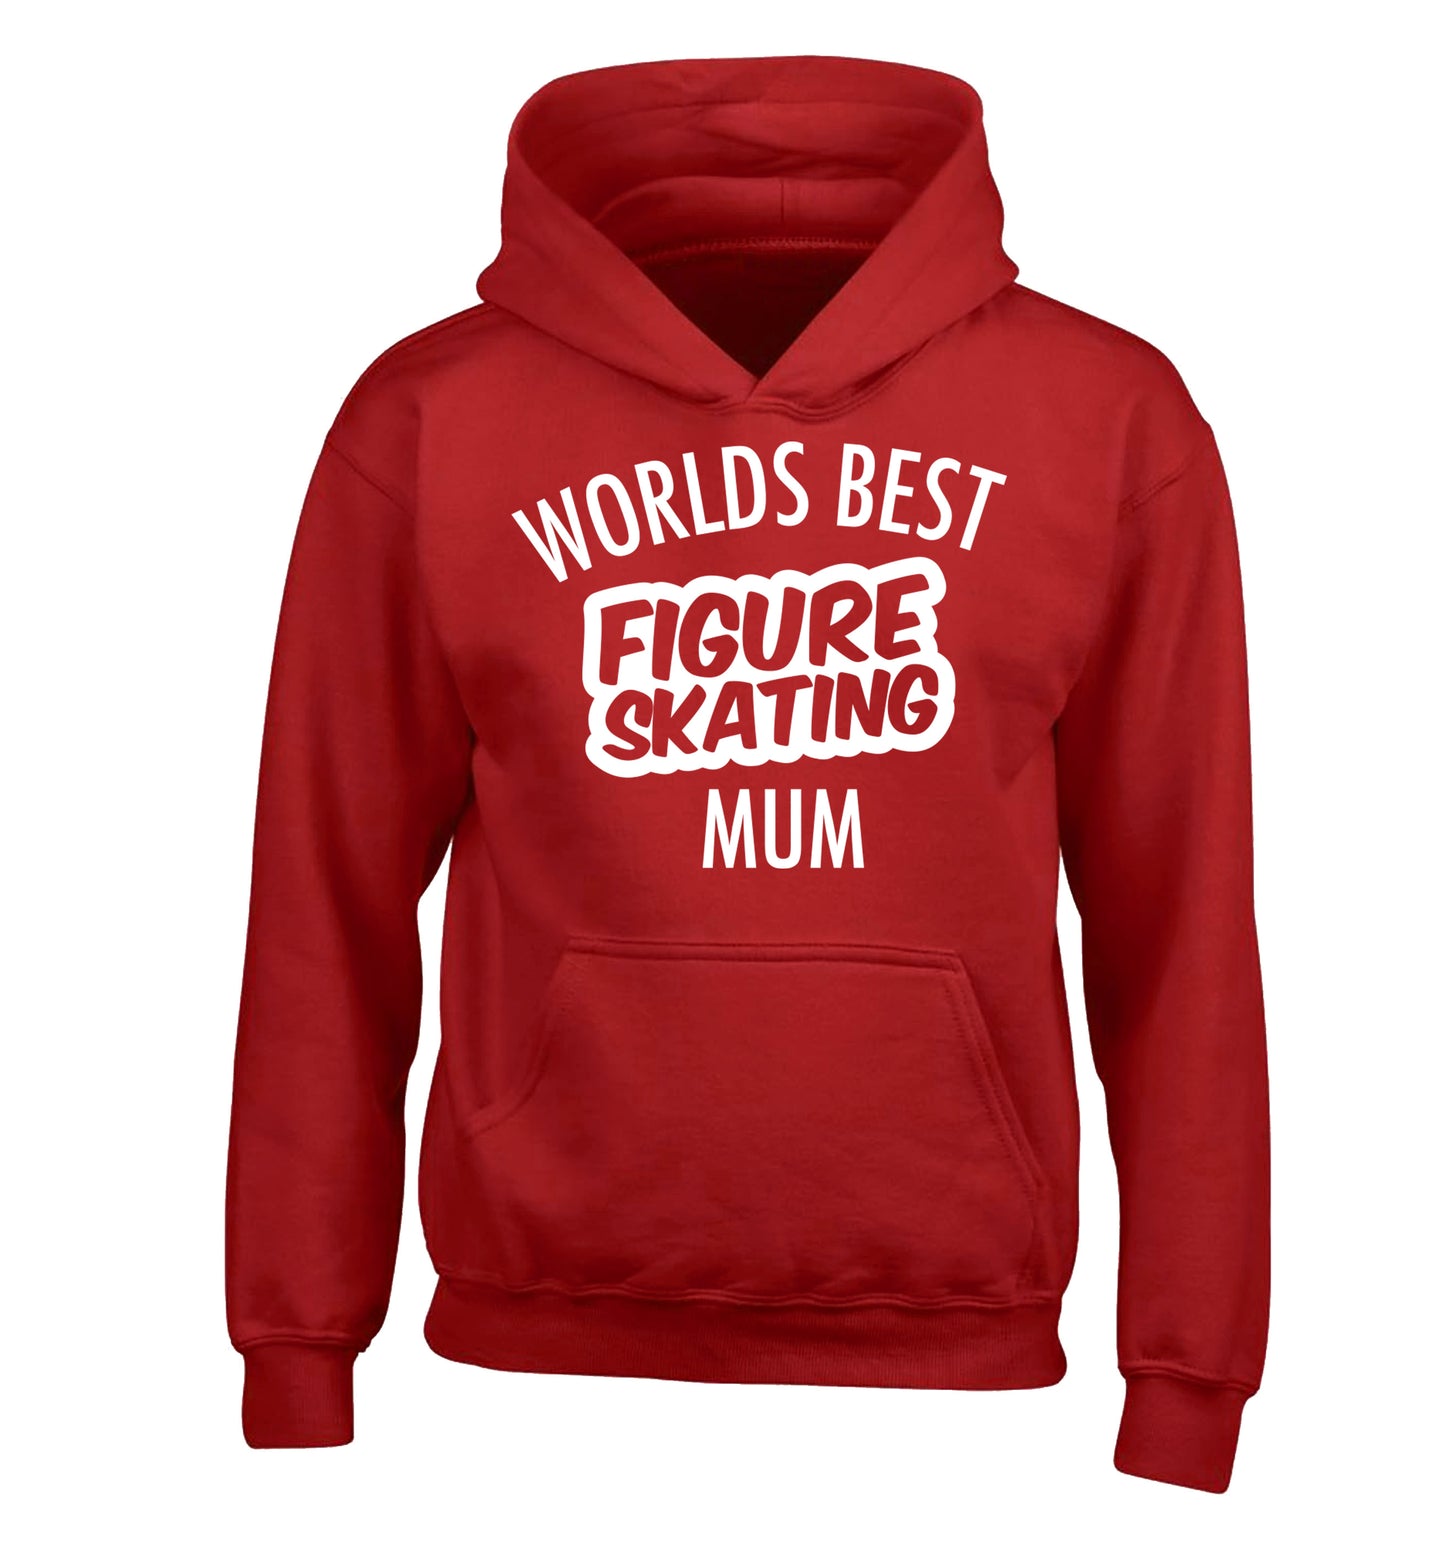 Worlds best figure skating mum children's red hoodie 12-14 Years